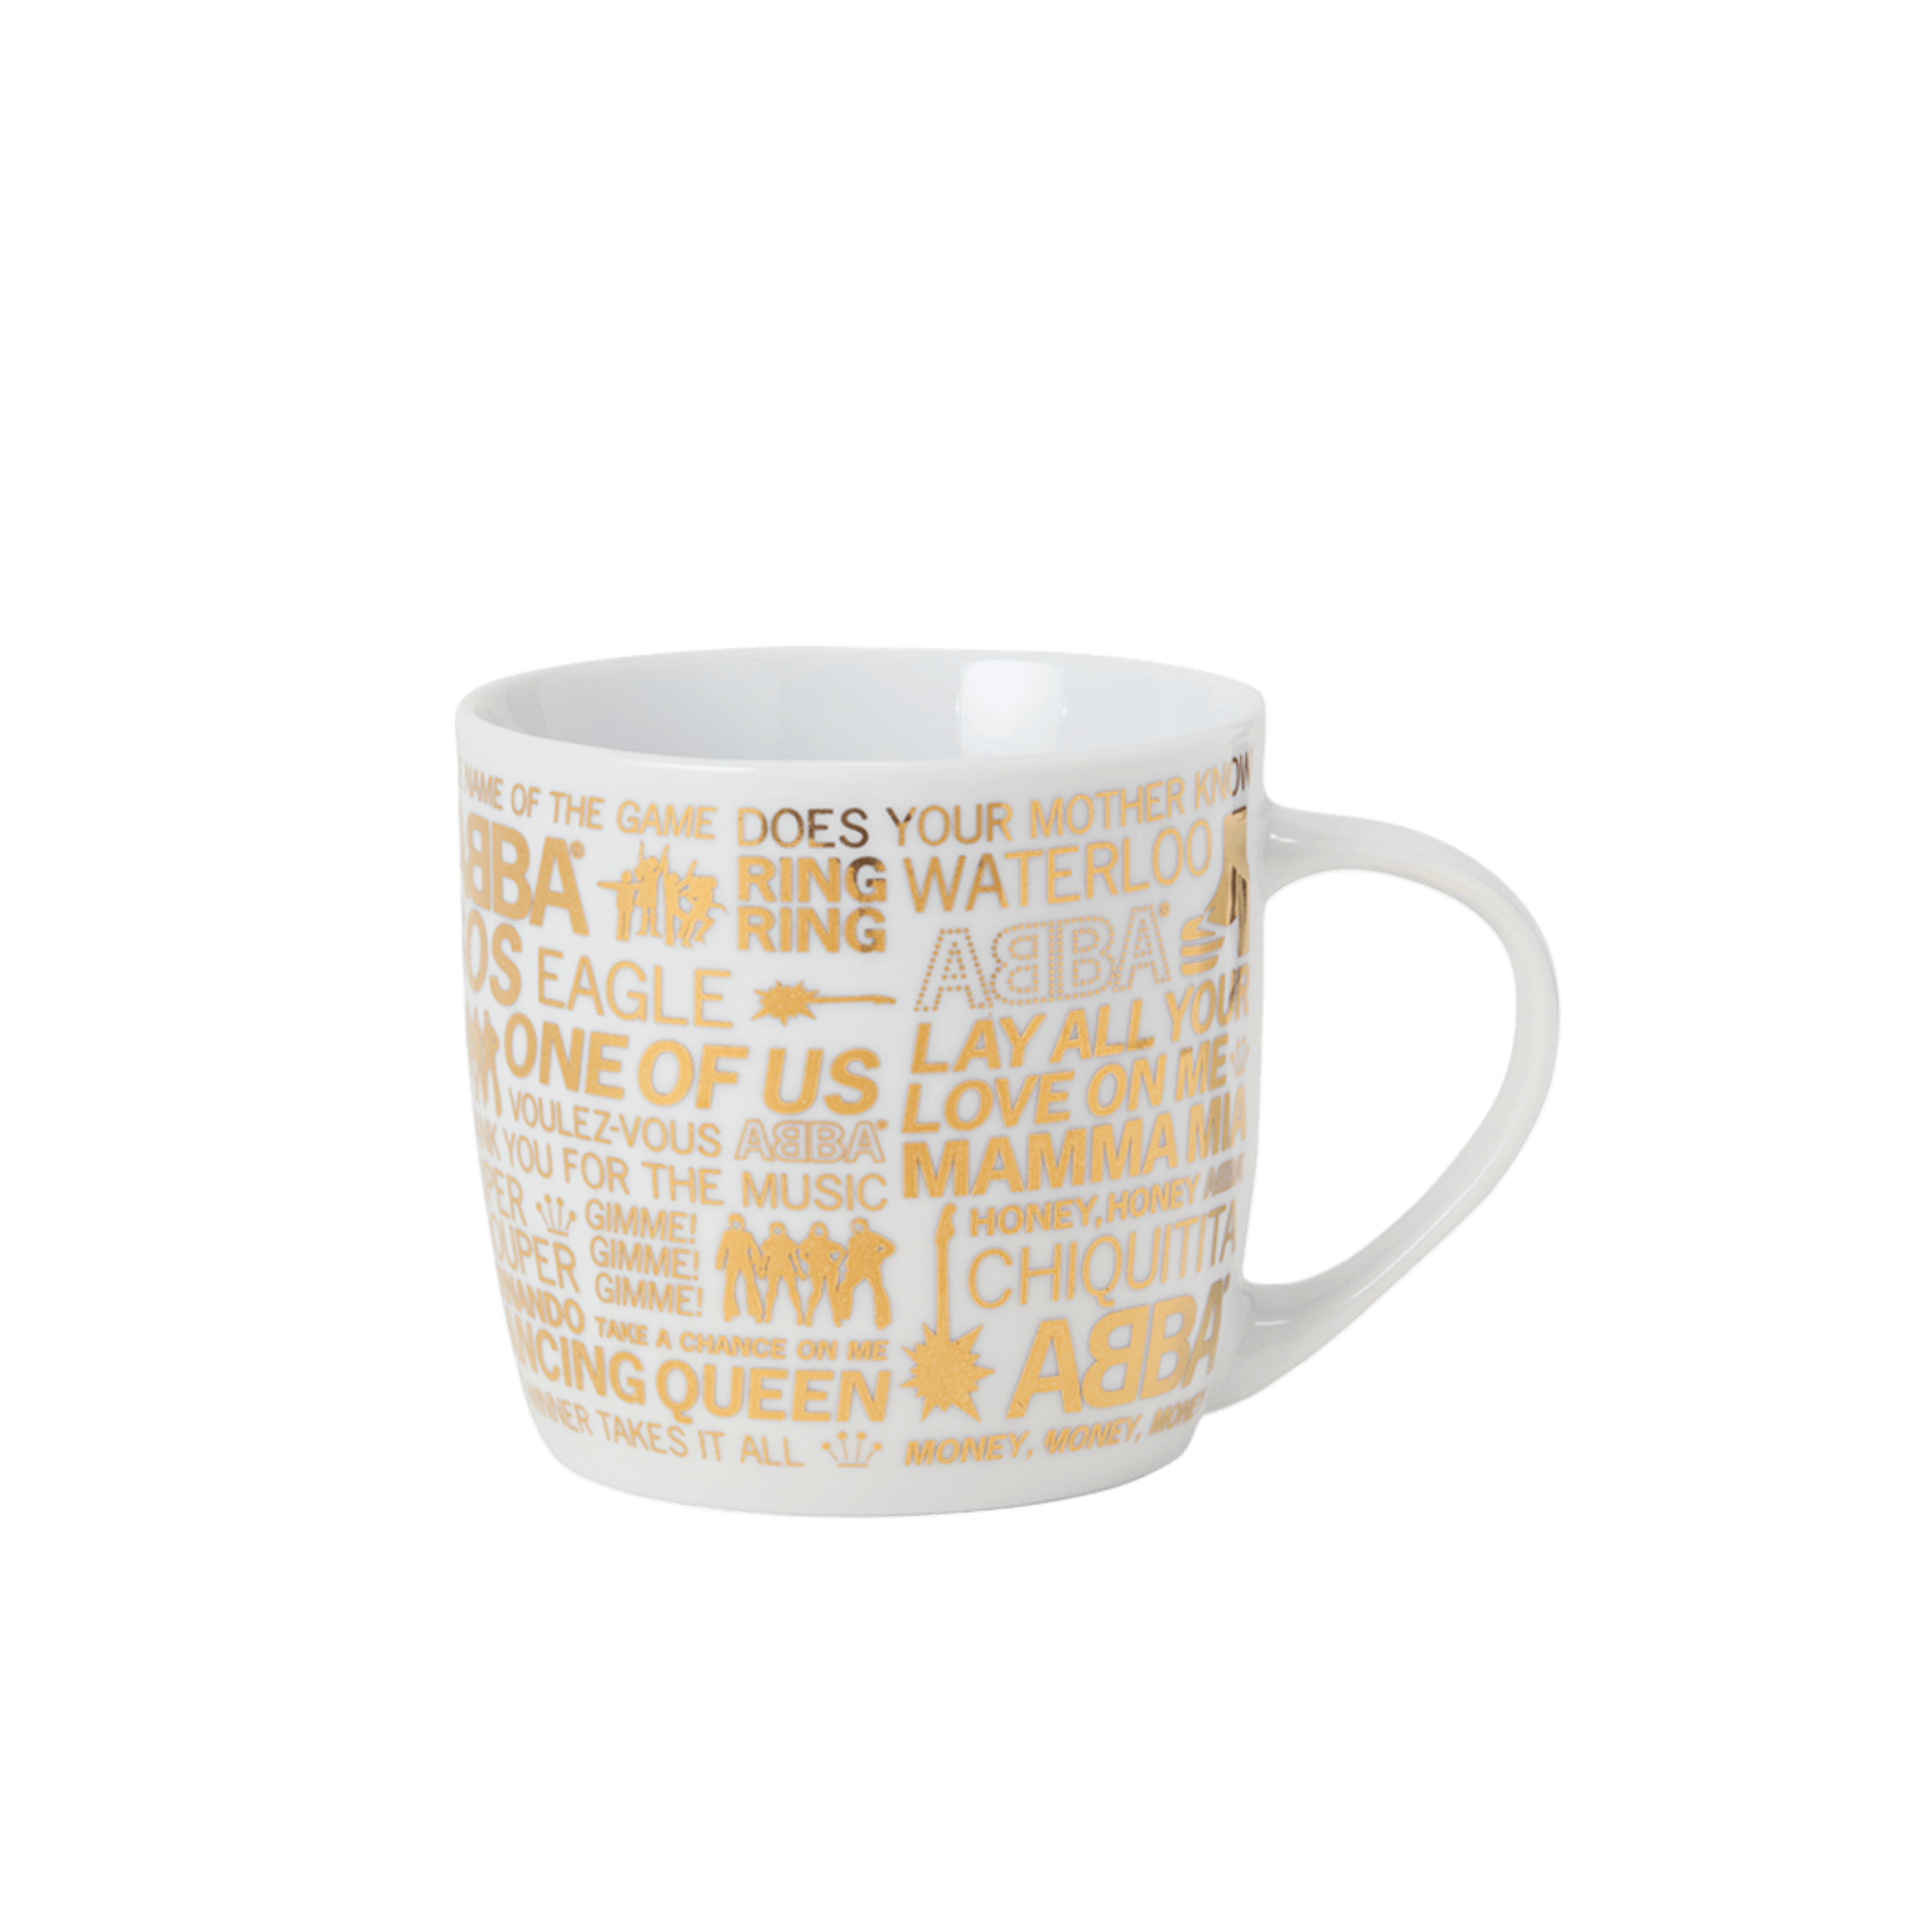 ABBA Gold pattern mug